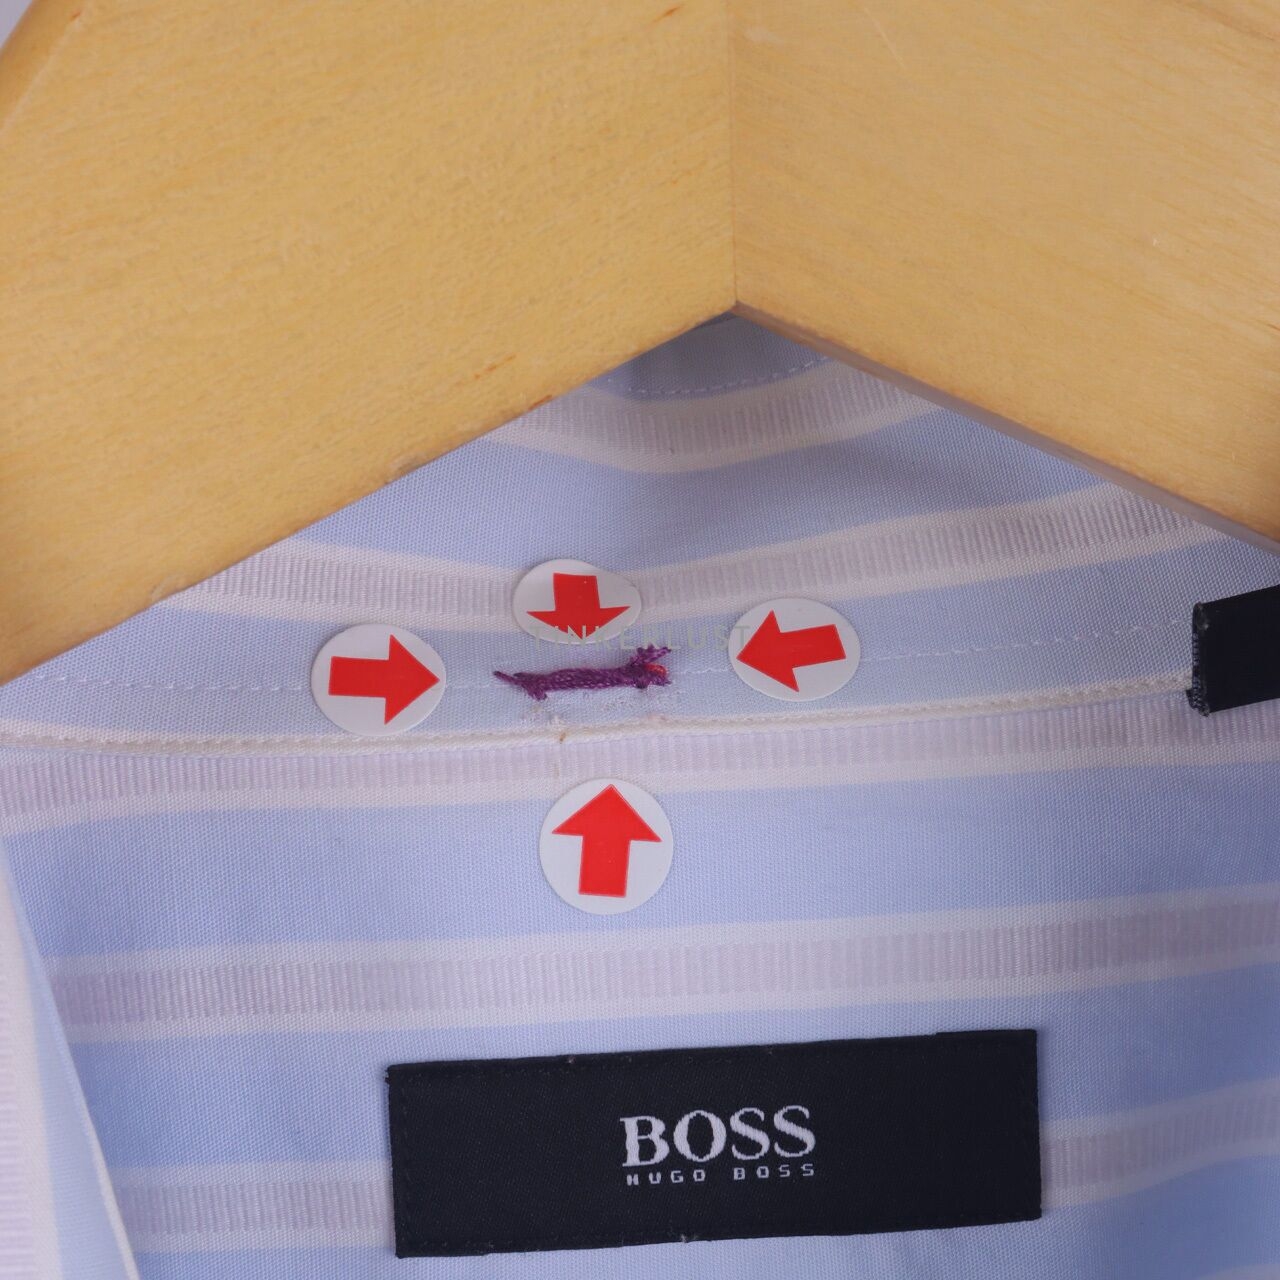 Boss by Hugo Boss Blue & White Sripes Long Sleeve Shirt